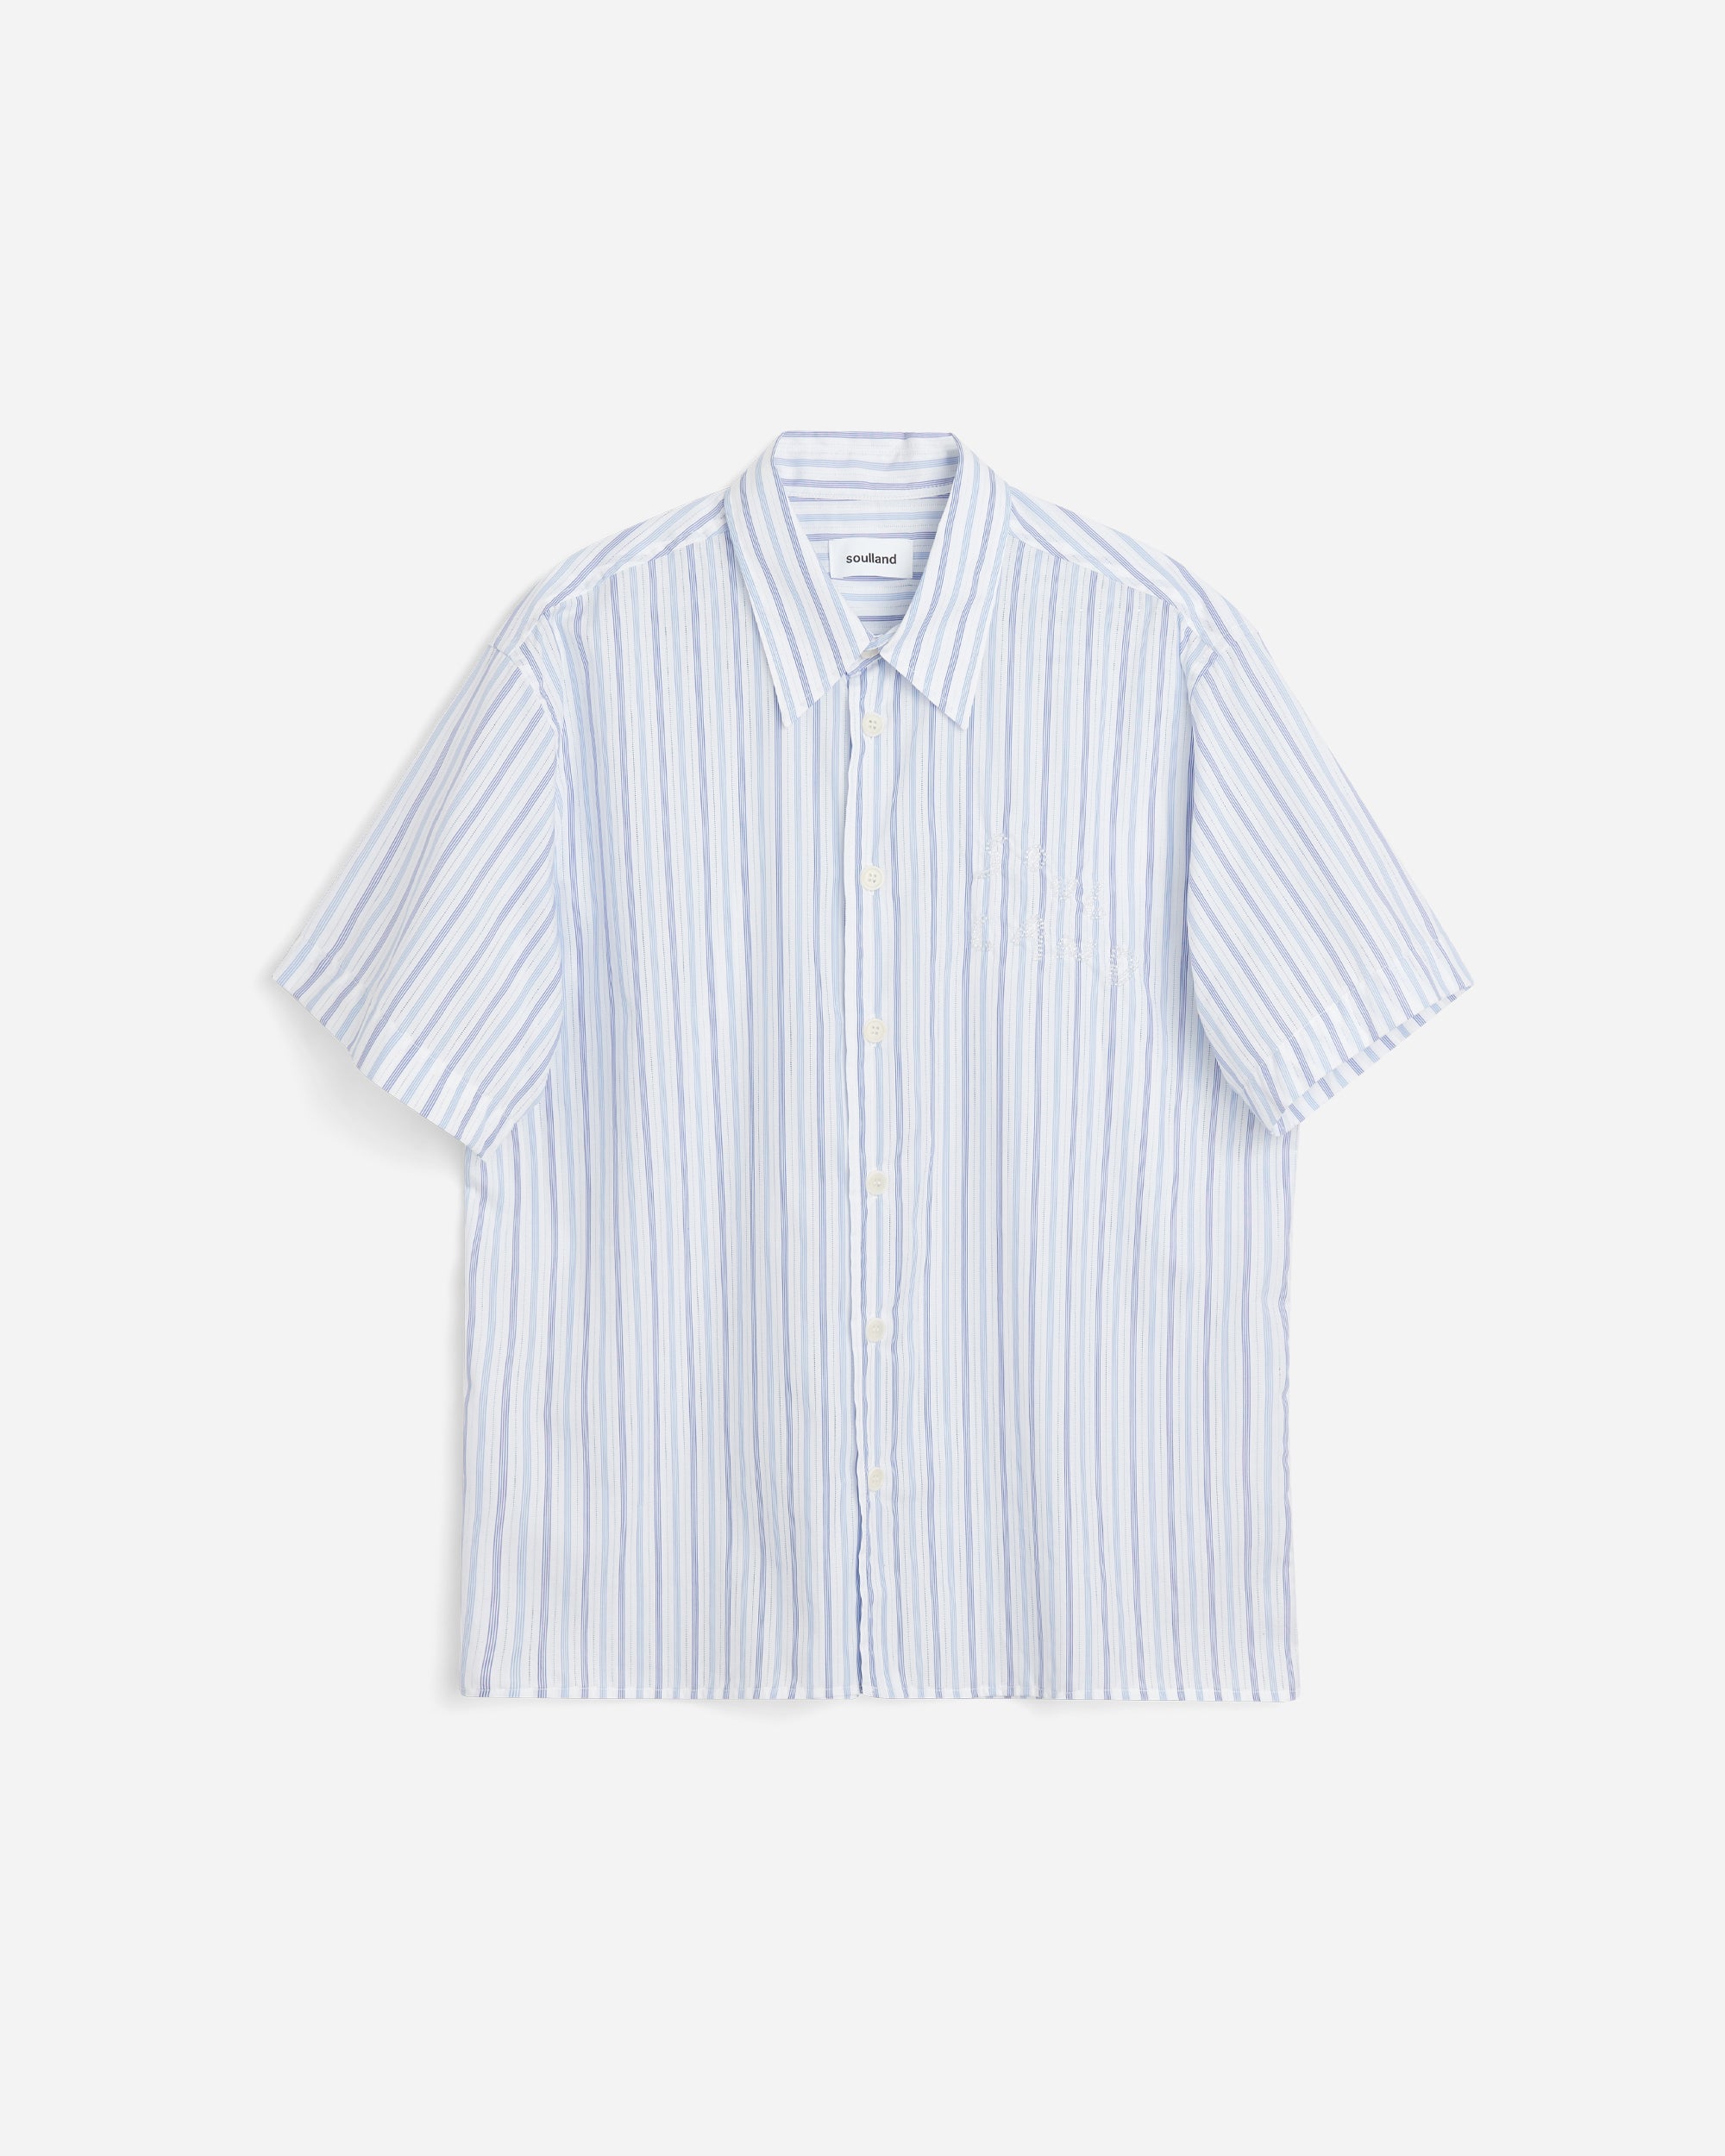 SOULLAND Jodie Shirt White /Blue 41032-1269-WHT/BLU